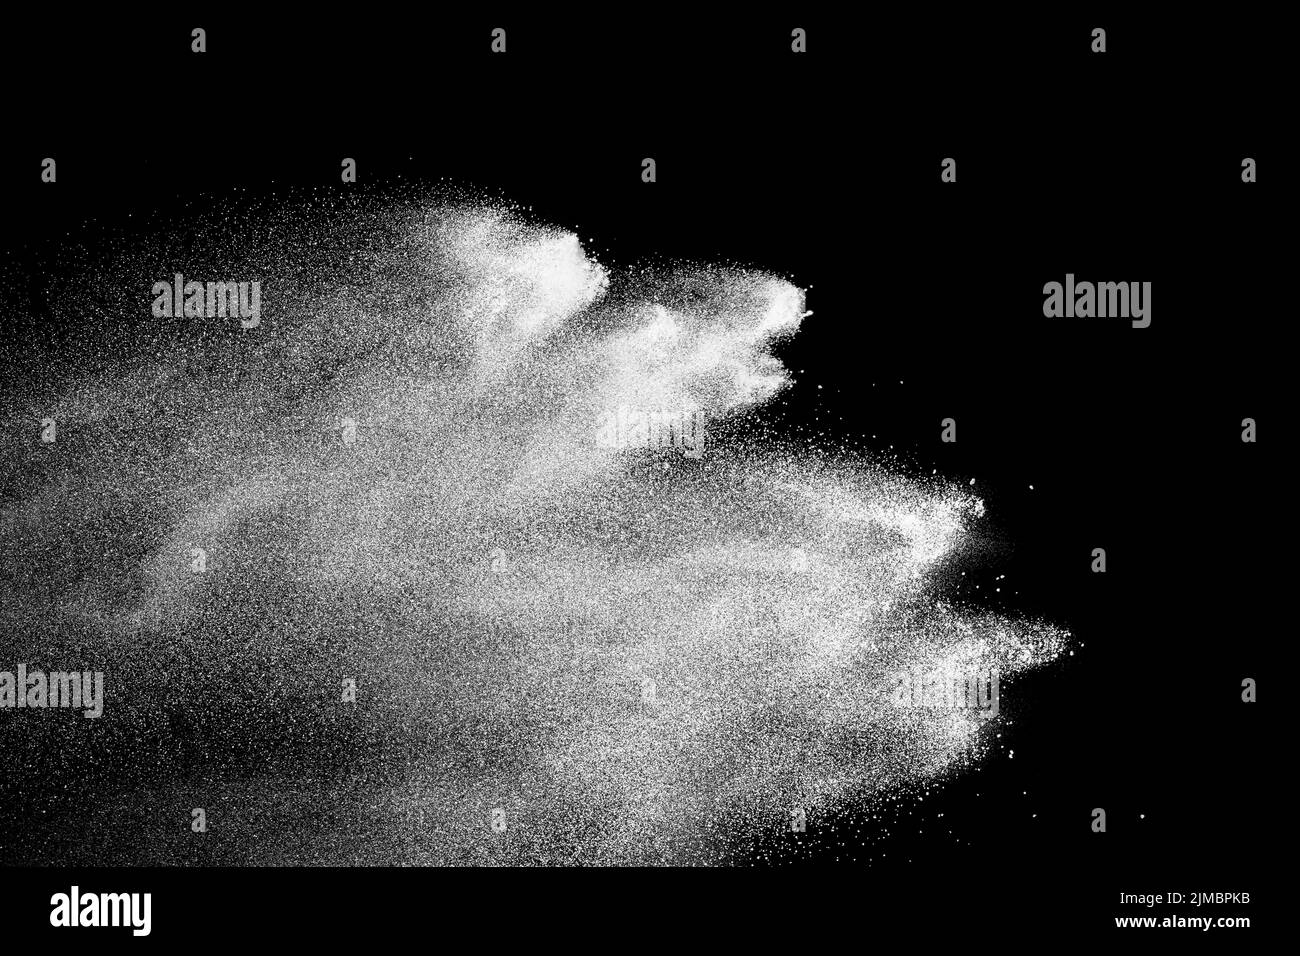 Esplosione di polvere di talco bianco su sfondo nero. Spruzzi di polvere bianca. Foto Stock